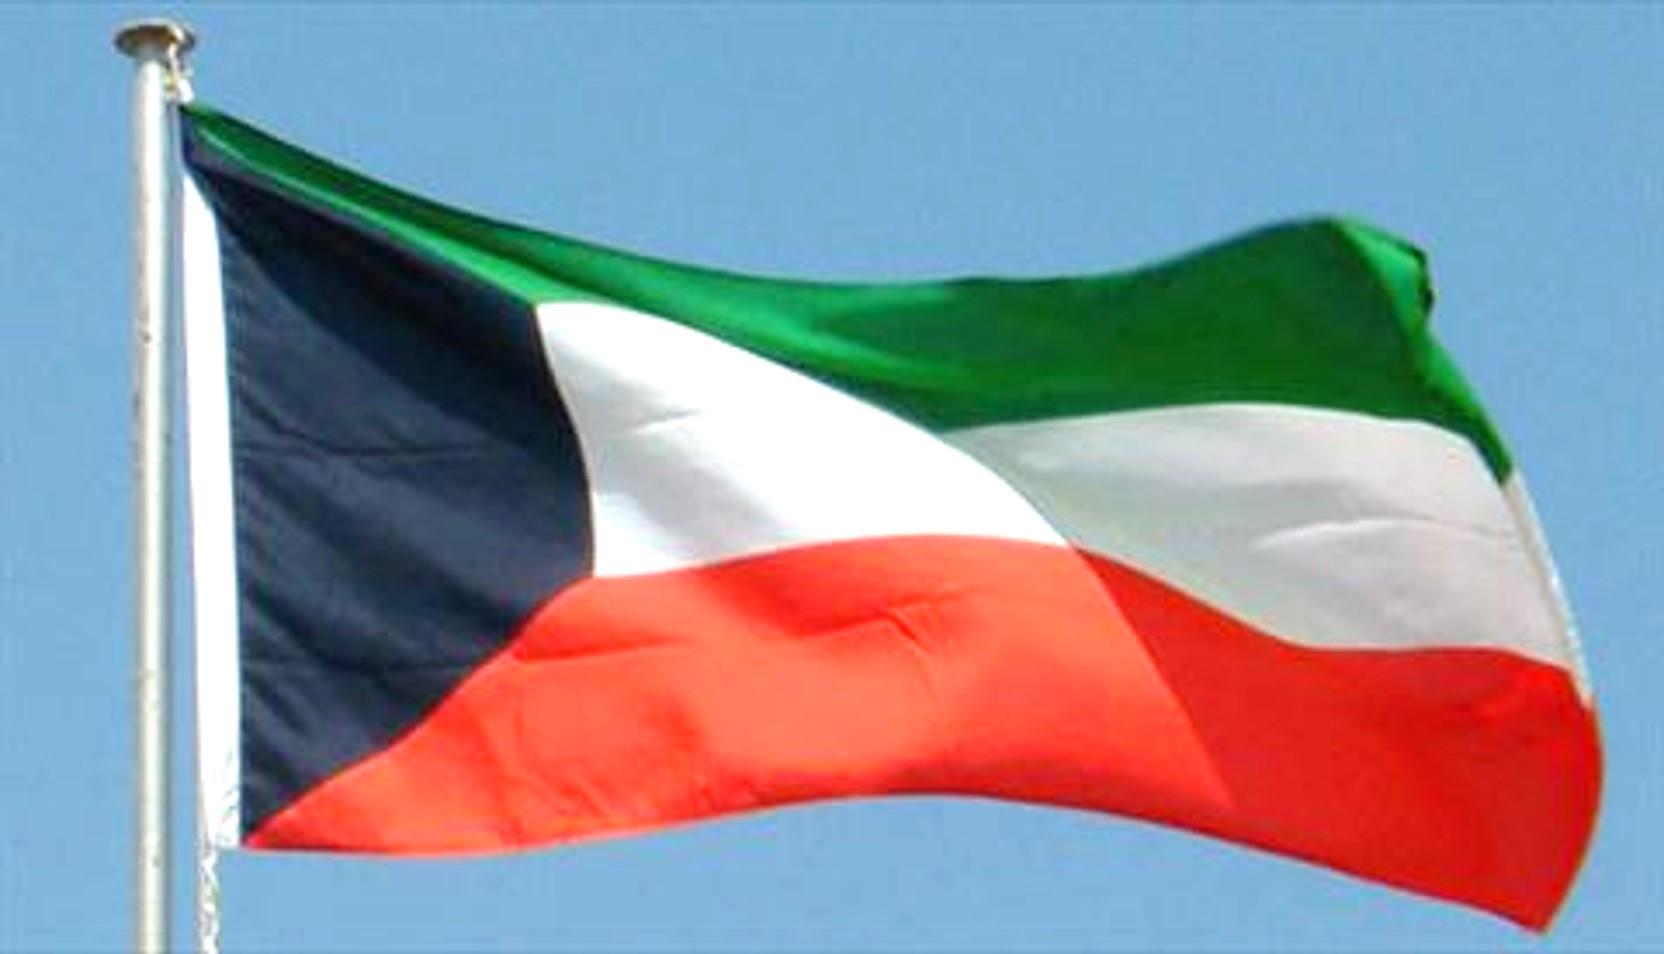 تعديل متوقع للتشكيلة الحكومية في الكويت